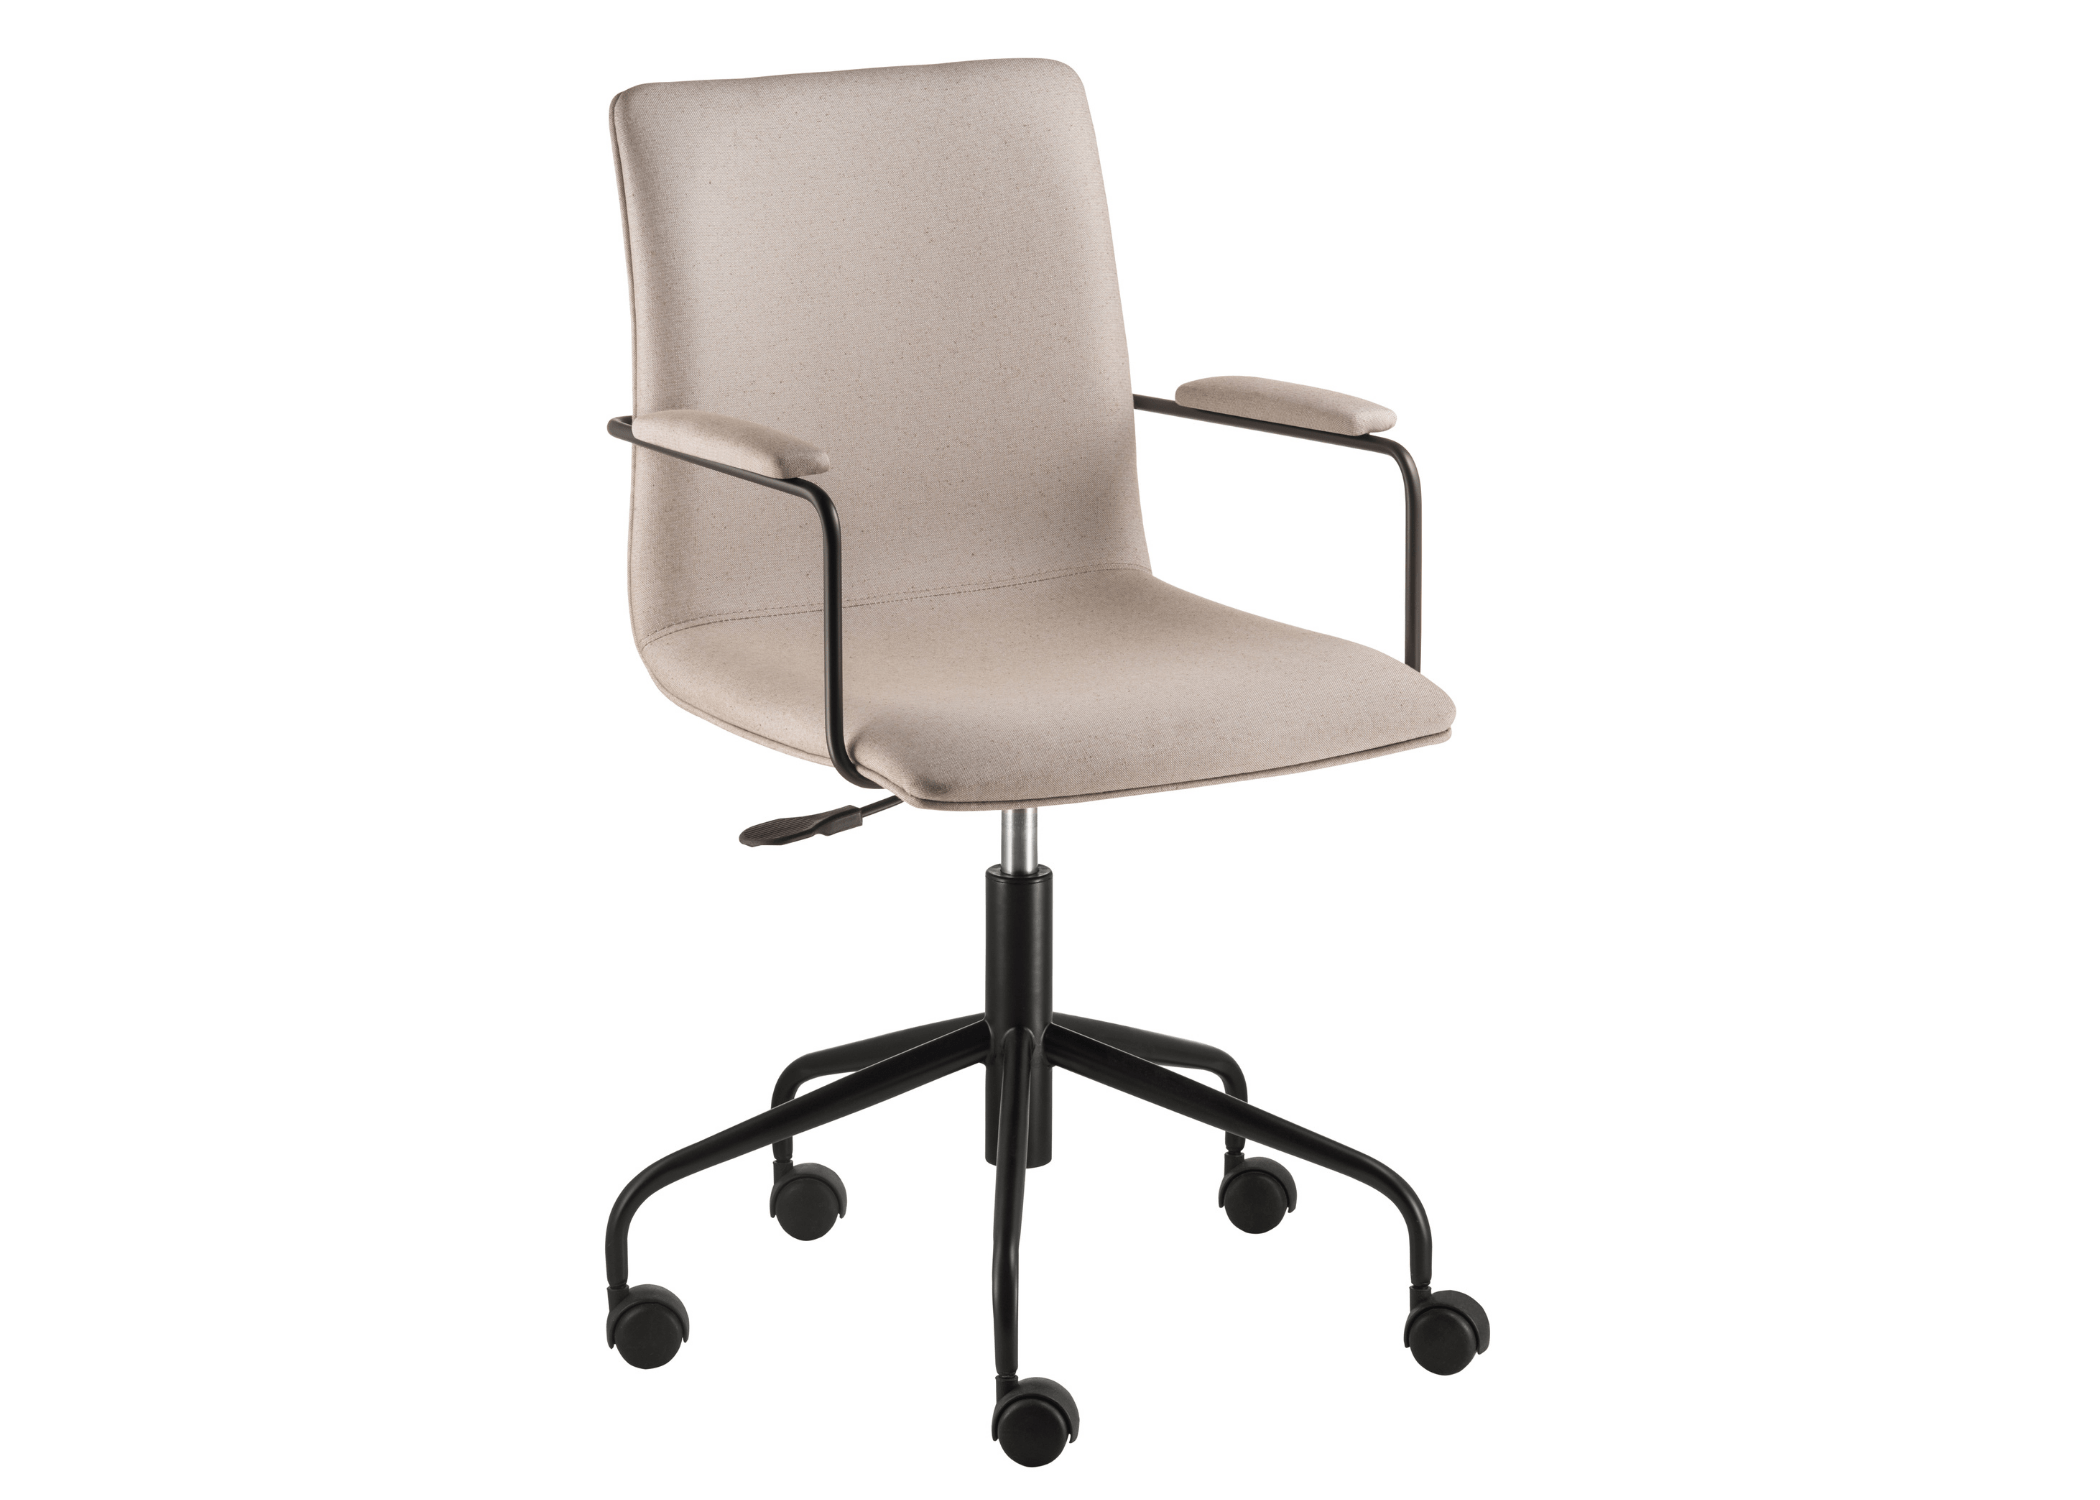 Elegância contemporânea: Cadeira Gala, a fusão perfeita de estilo e ergonomia.